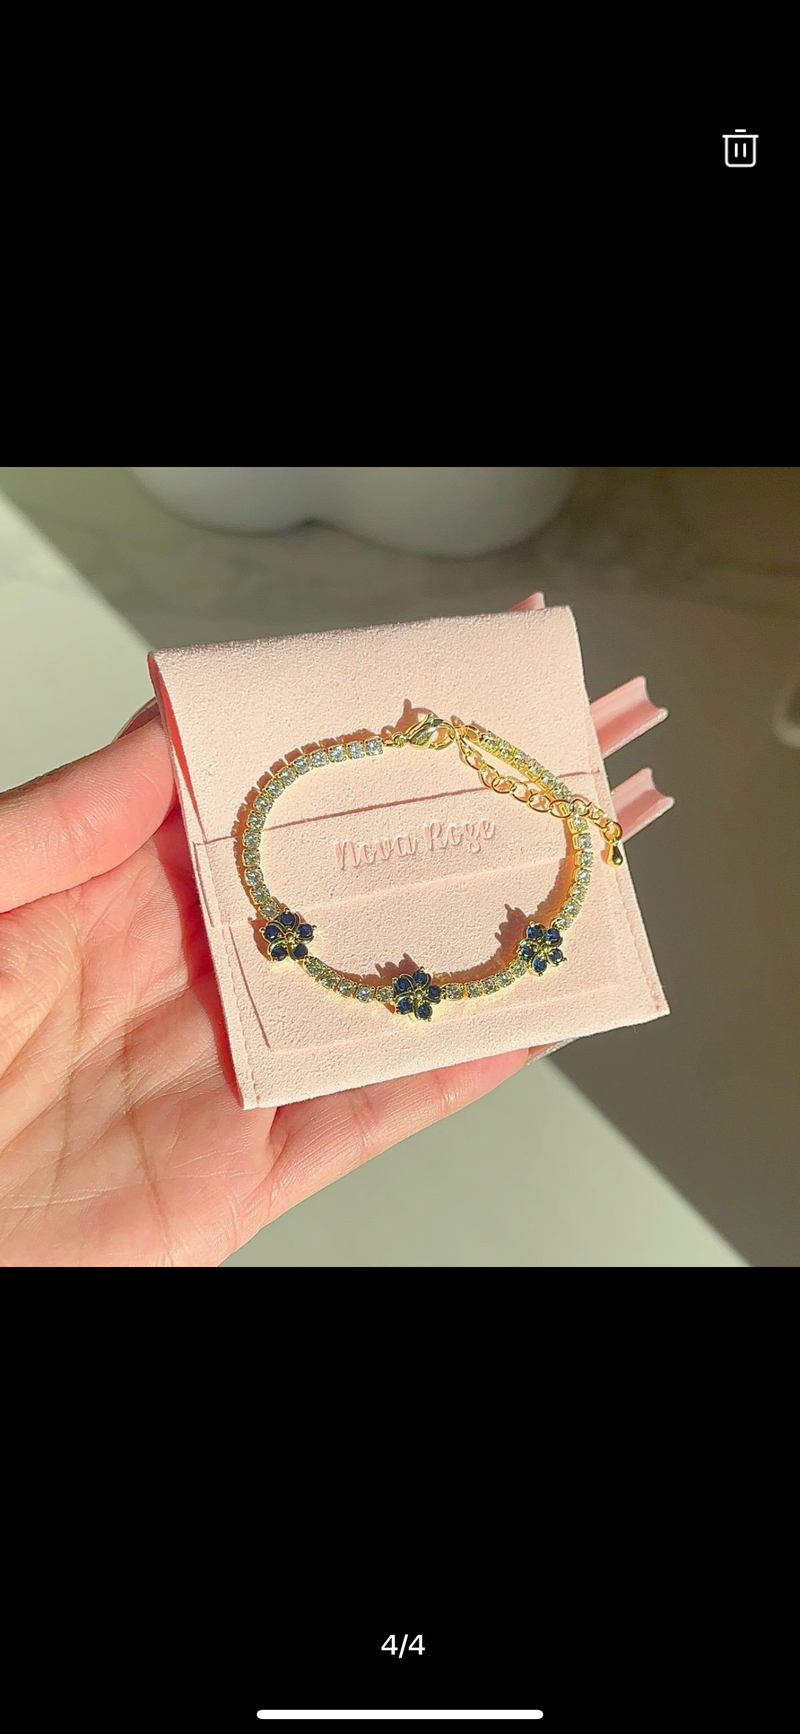 “Blossom bling” bracelet